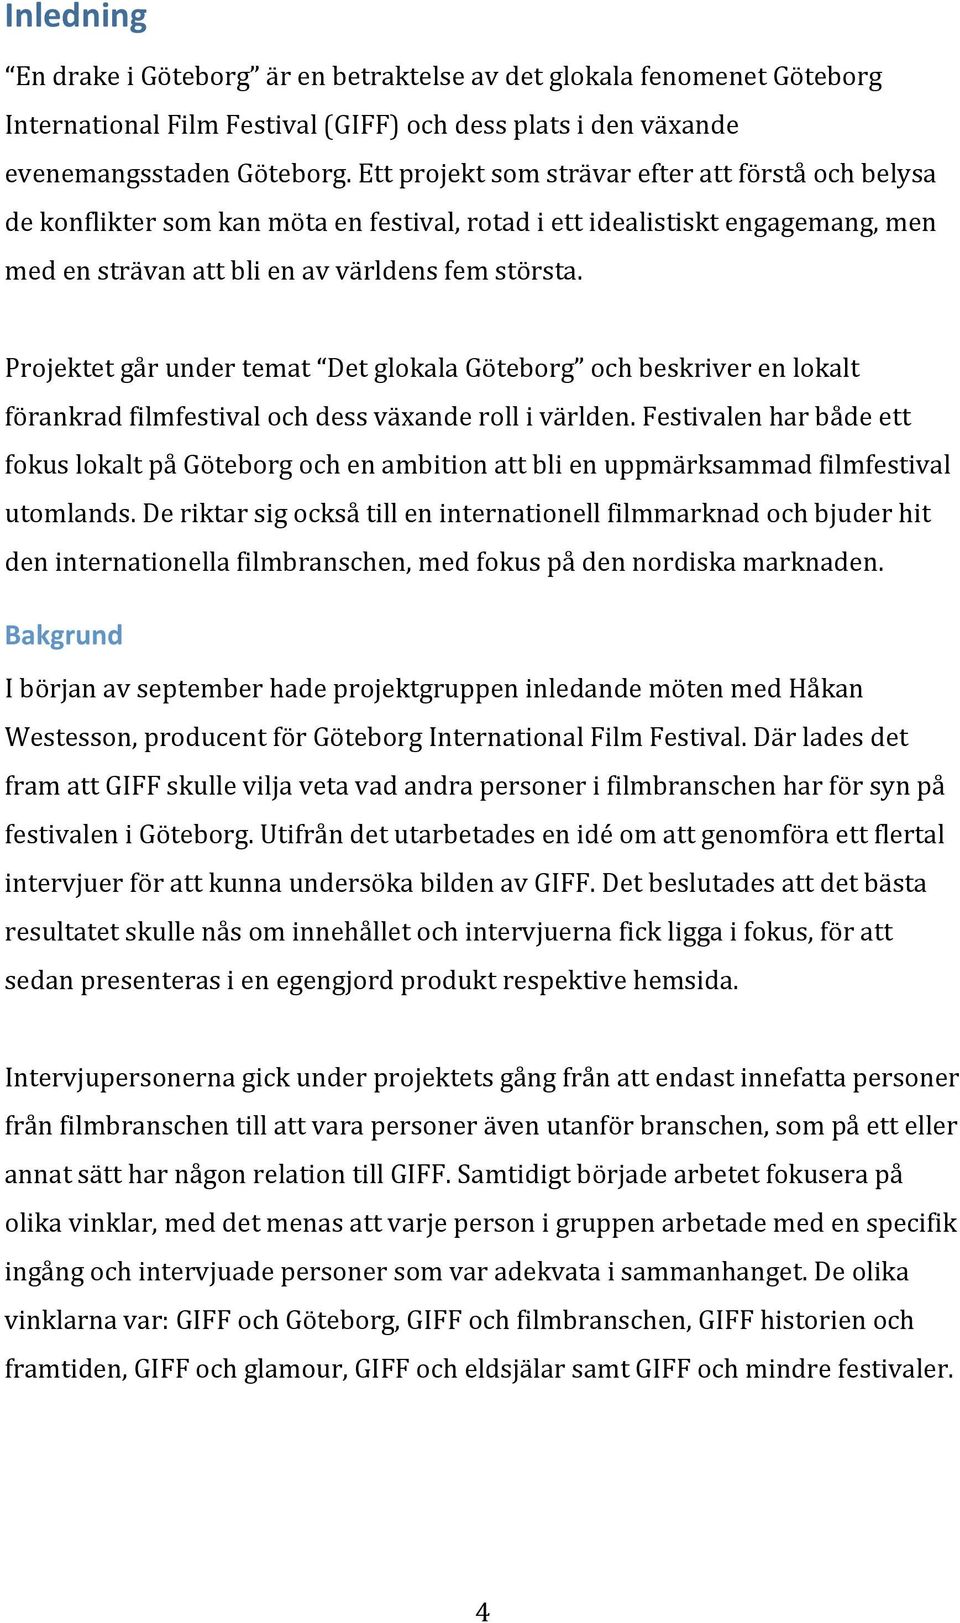 Projektetgårundertemat DetglokalaGöteborg ochbeskriverenlokalt förankradfilmfestivalochdessväxanderollivärlden.